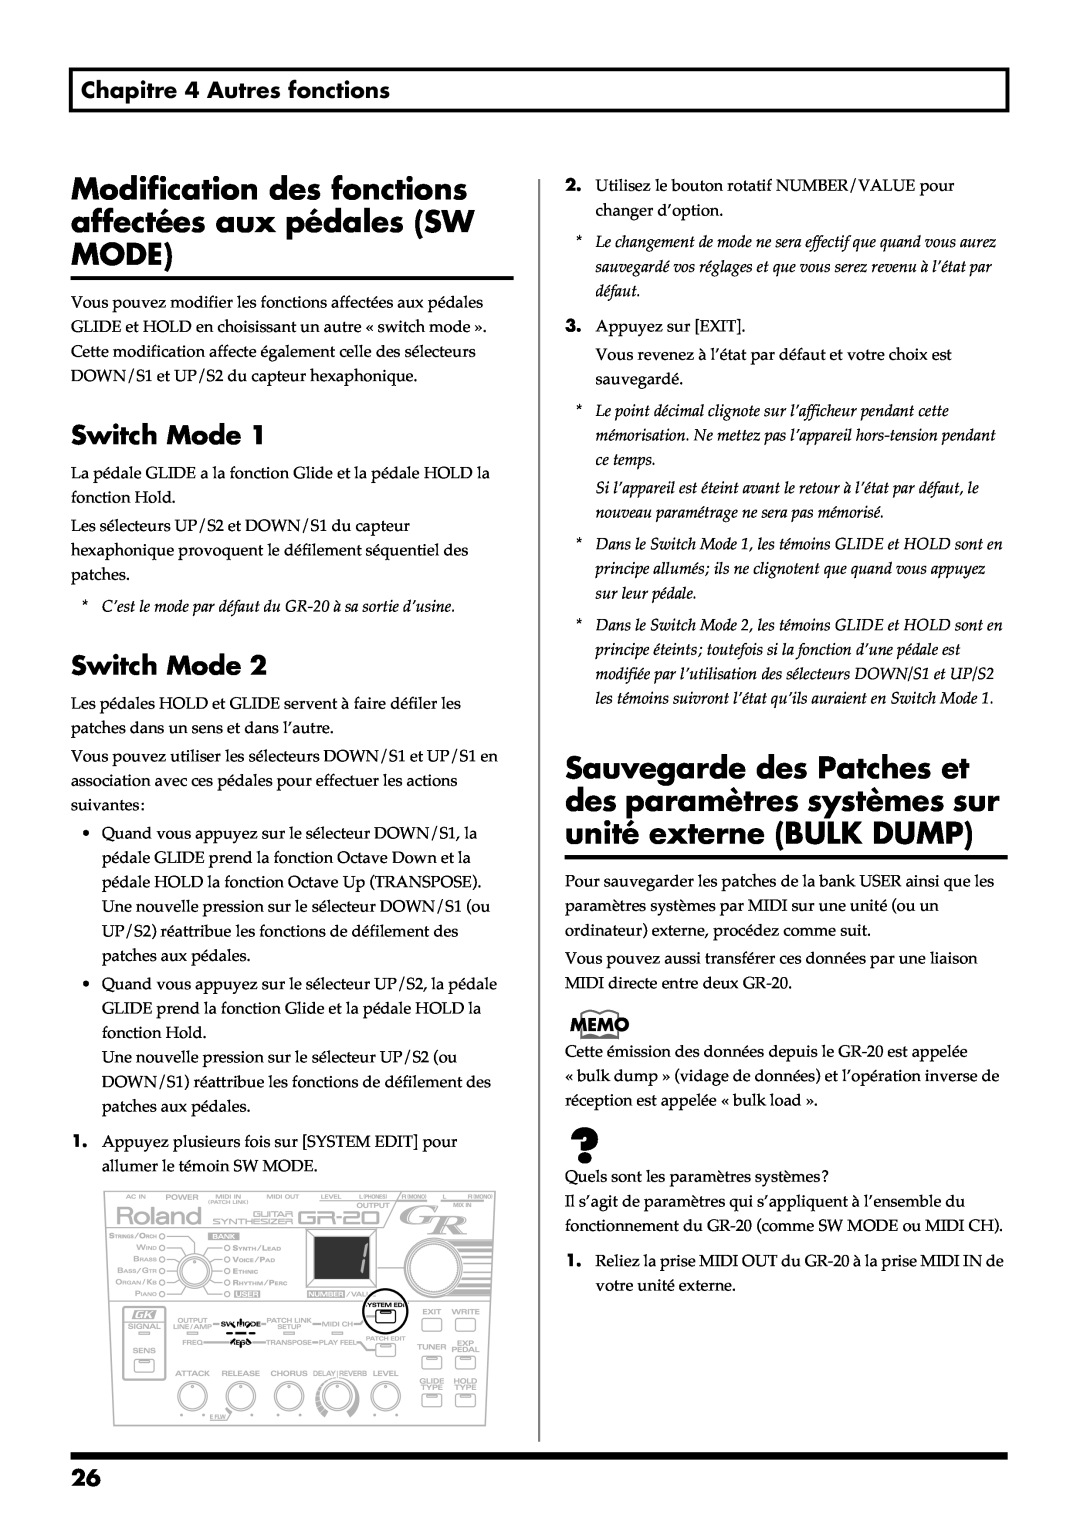 Roland GR-20 manual Switch Mode, Chapitre 4 Autres fonctions 